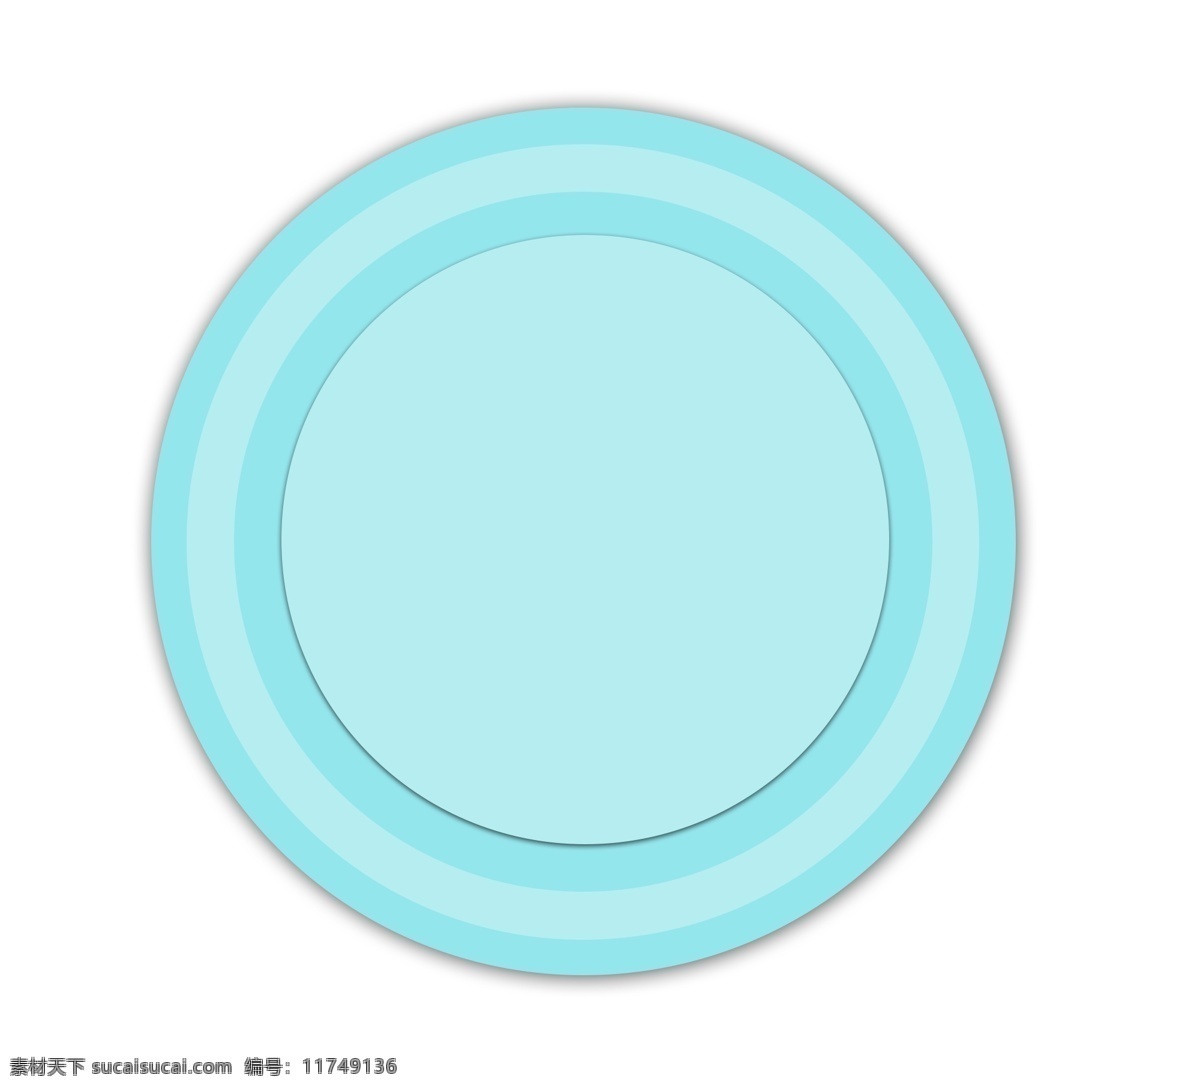 蓝色圆盘 蓝色 圆盘 装饰